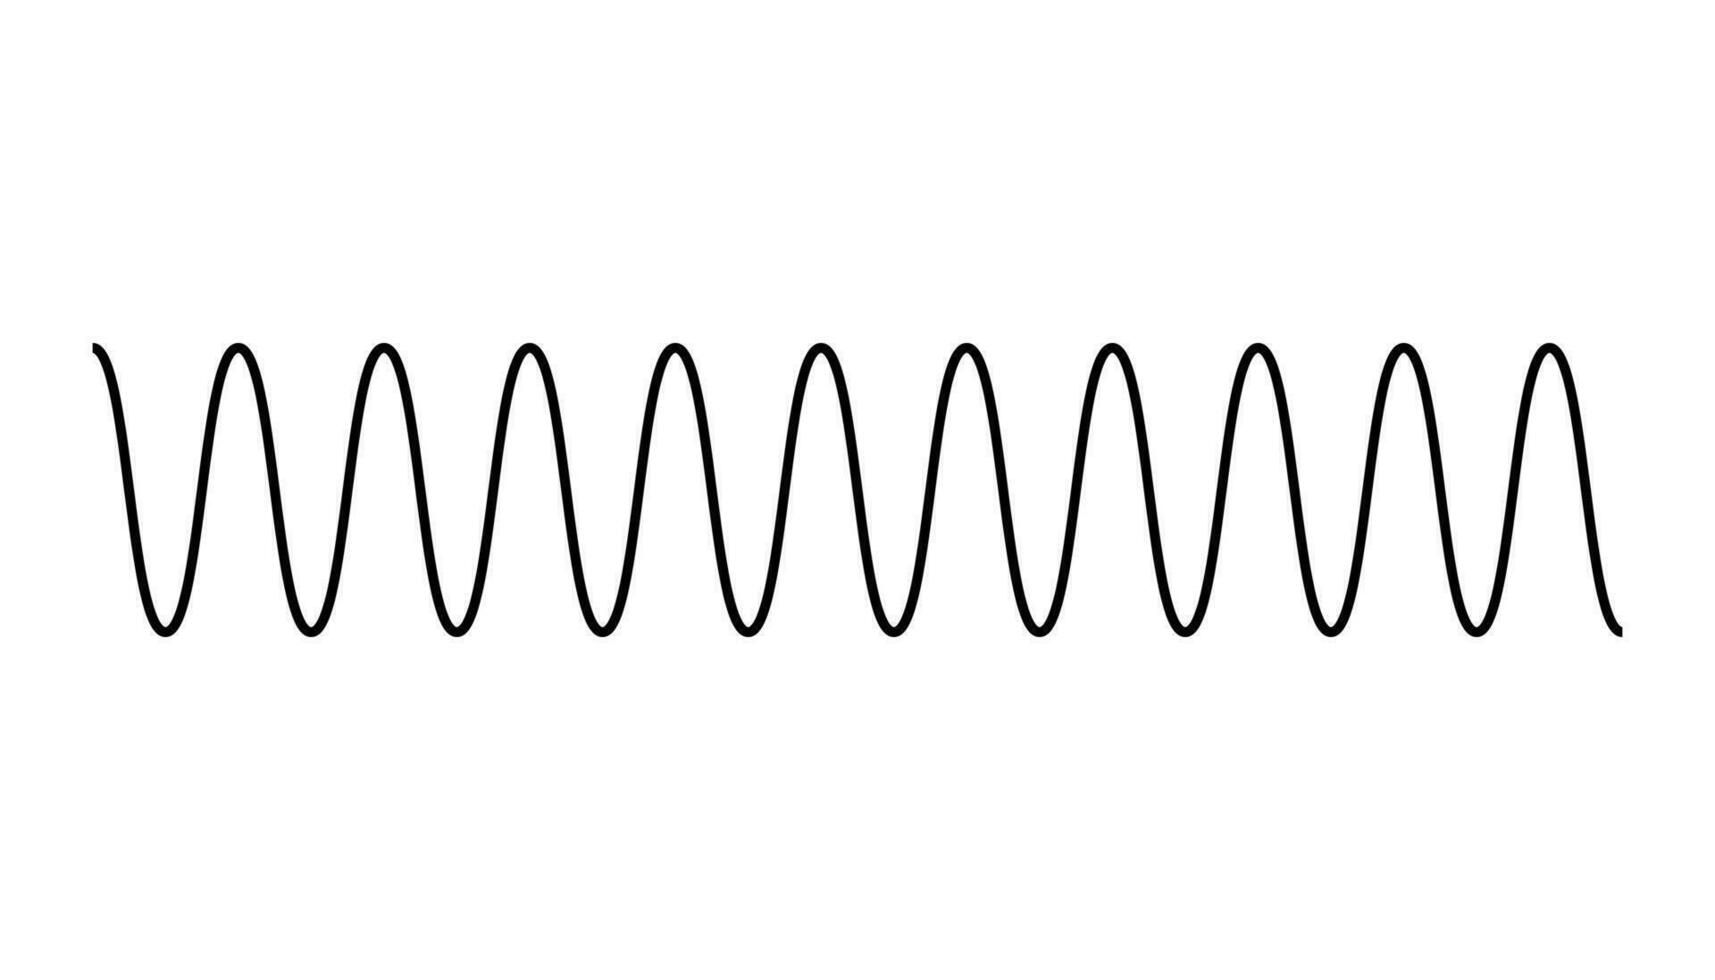 dirección de ola movimiento. cresta, amplitud, canal, altura y longitud de ola. partes de el ola diagrama vector. vector